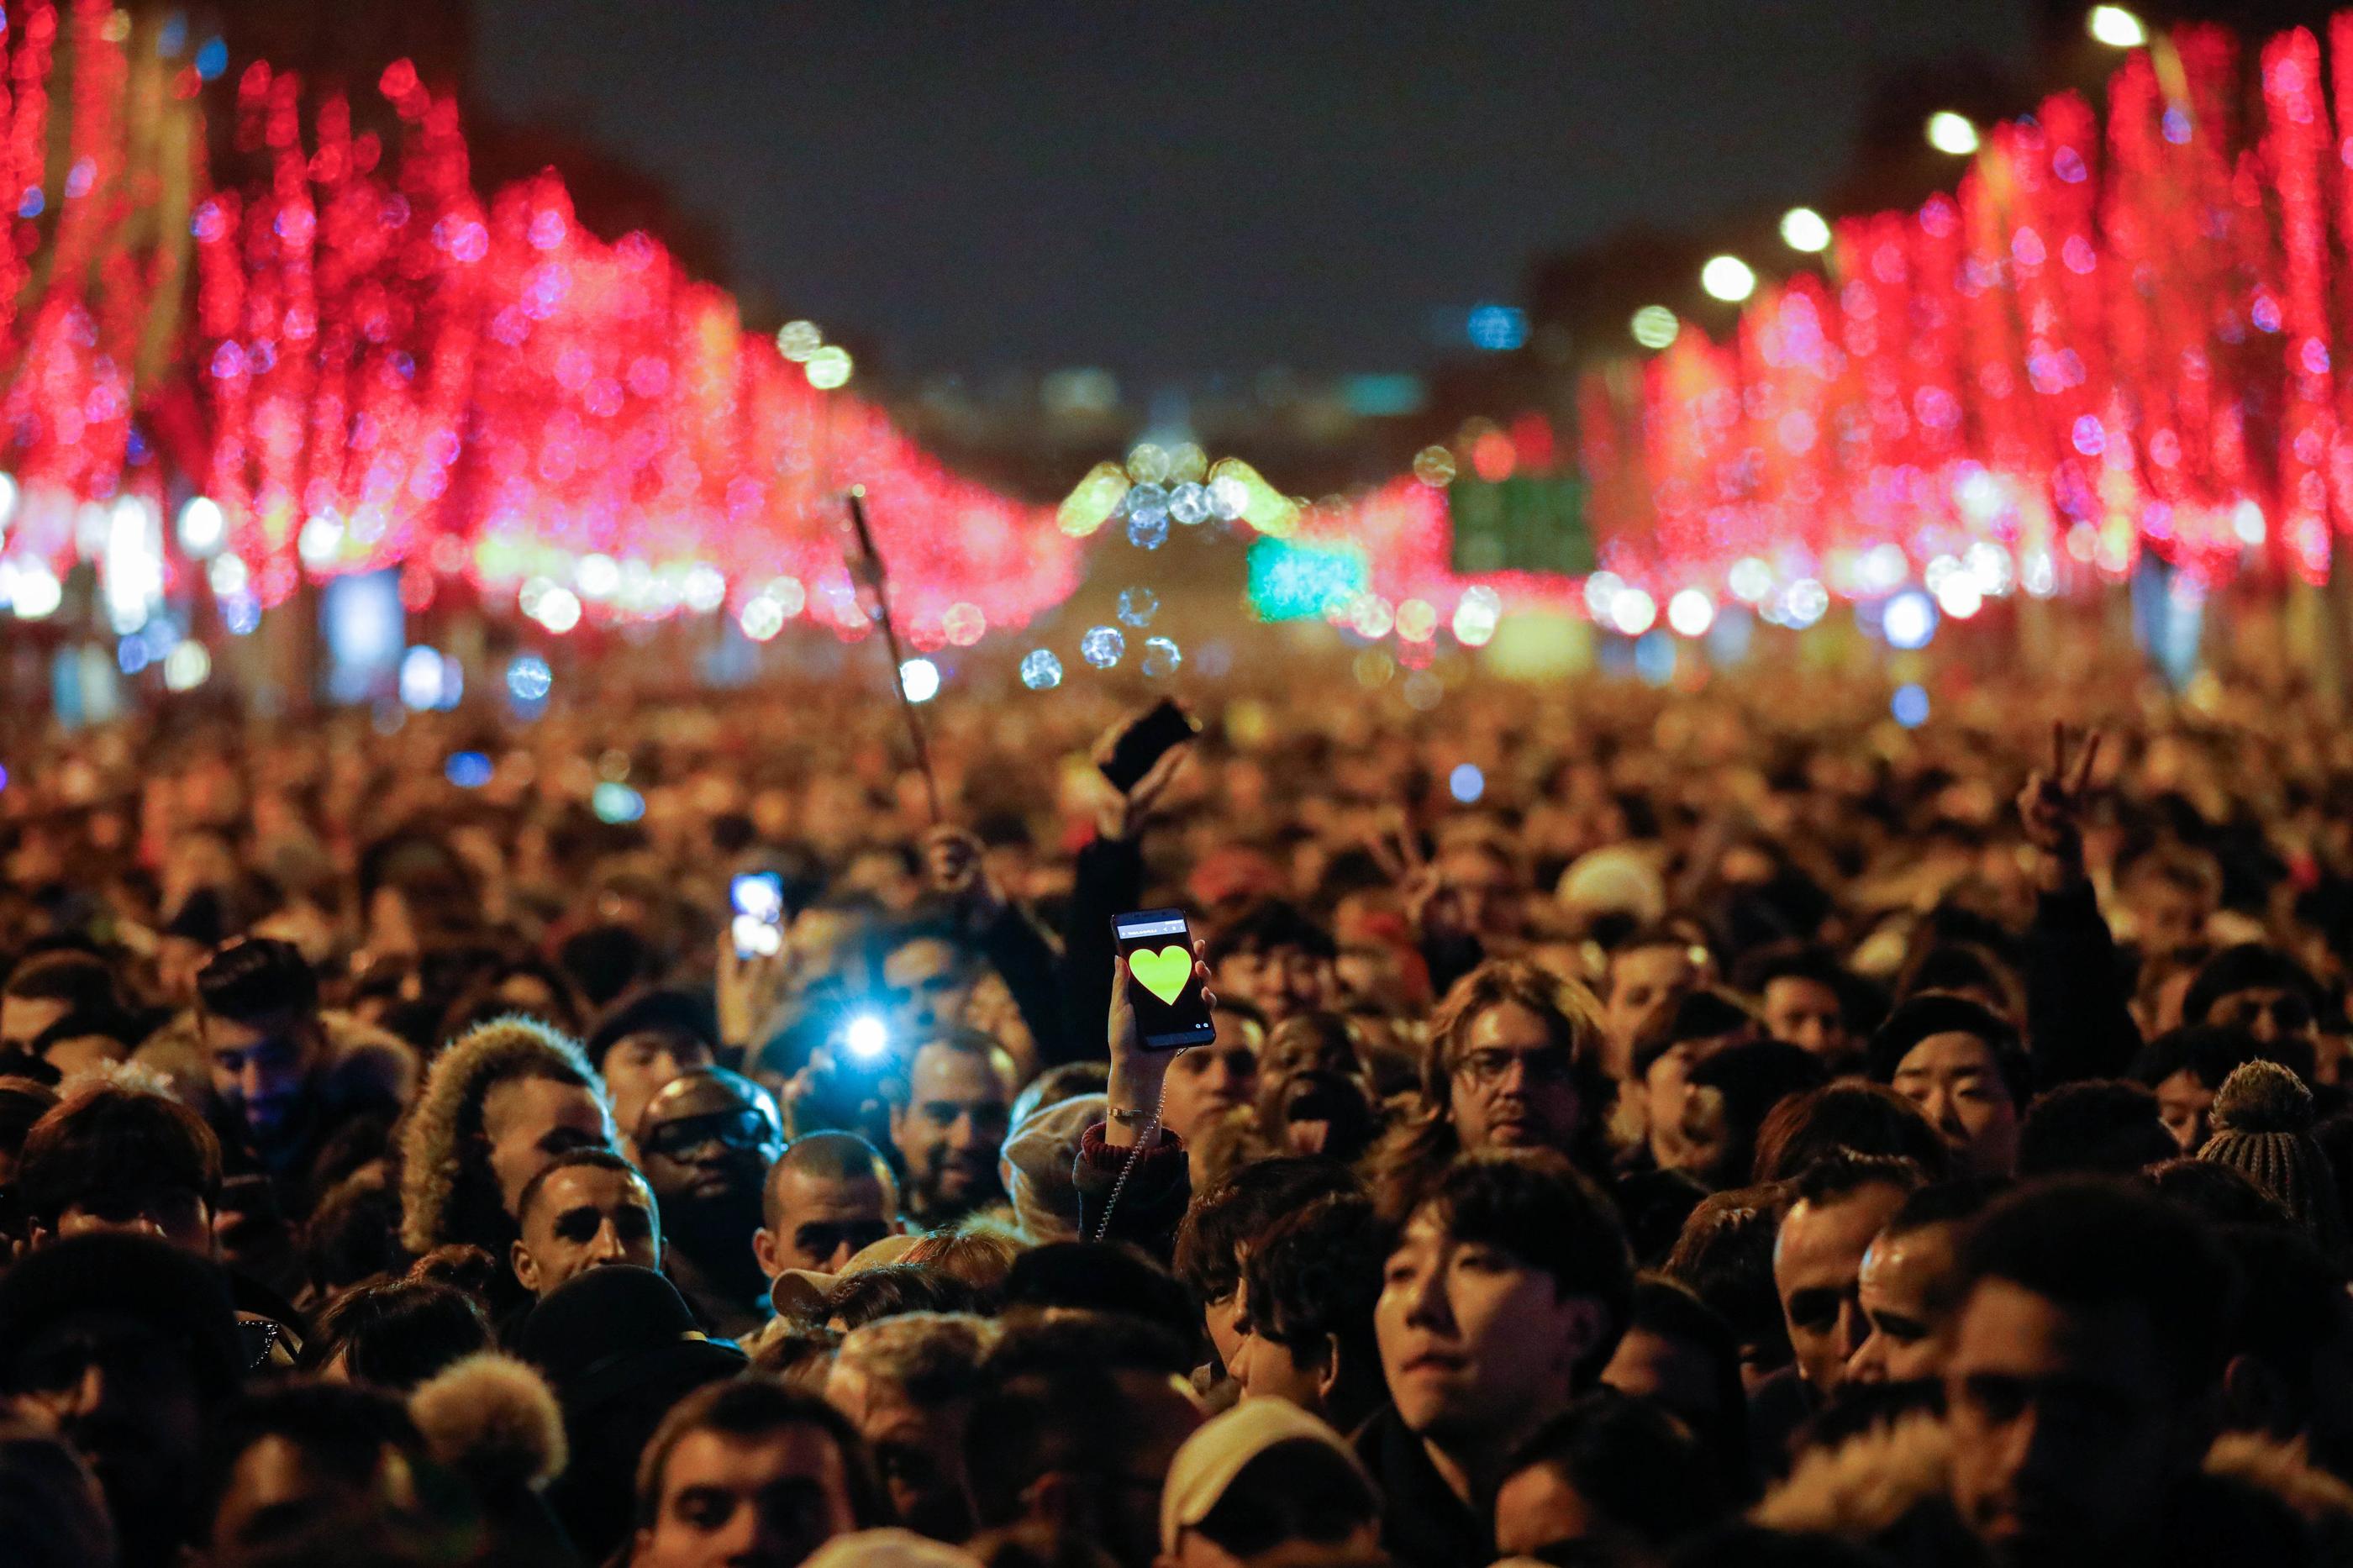 Dimanche soir, et jusqu'à lundi 4 heures du matin dans certaines rues, la circulation sera réservée aux piétons dans un large périmètre autour des Champs-Elysées (VIIIe). (Archives) LP/Olivier Corsan